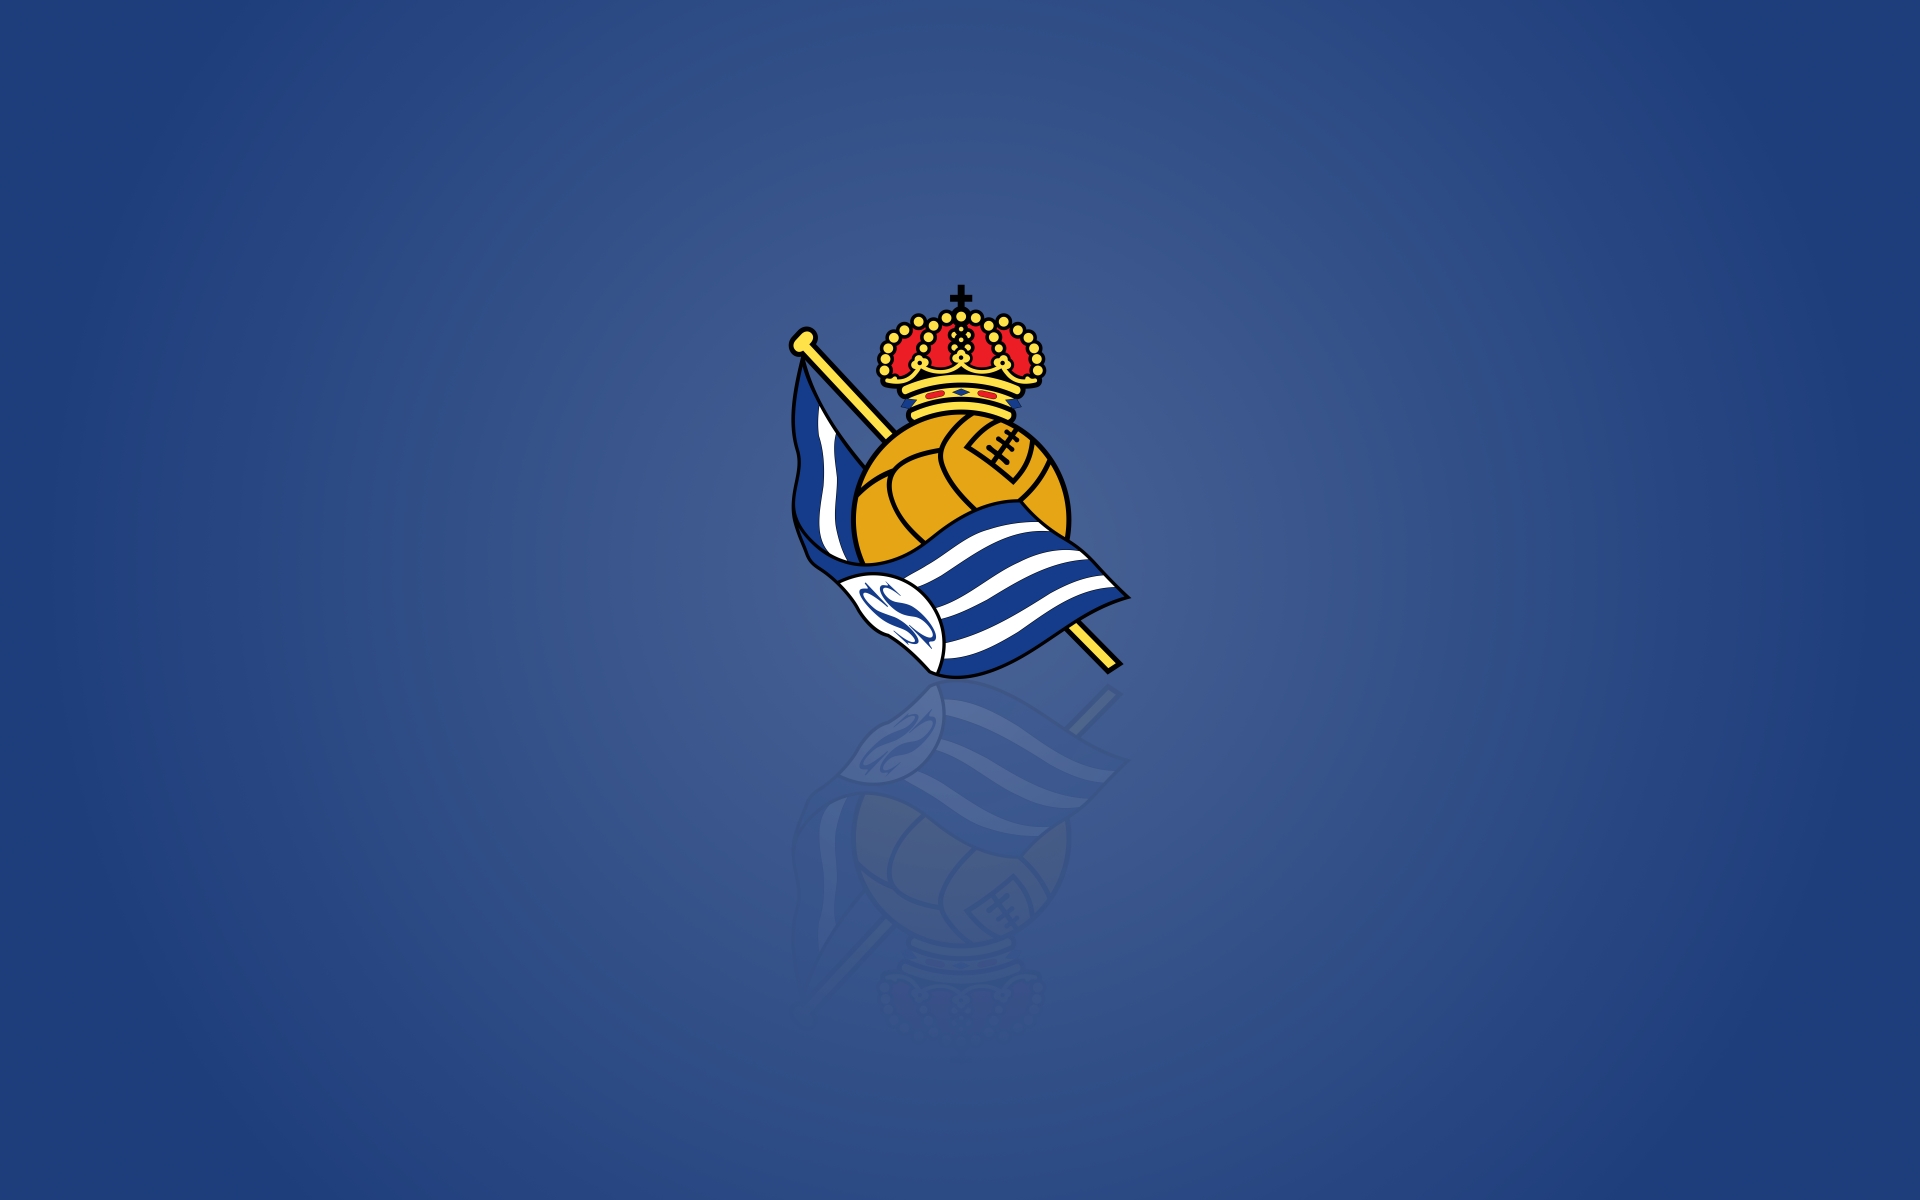 Real Sociedad – Logos Download